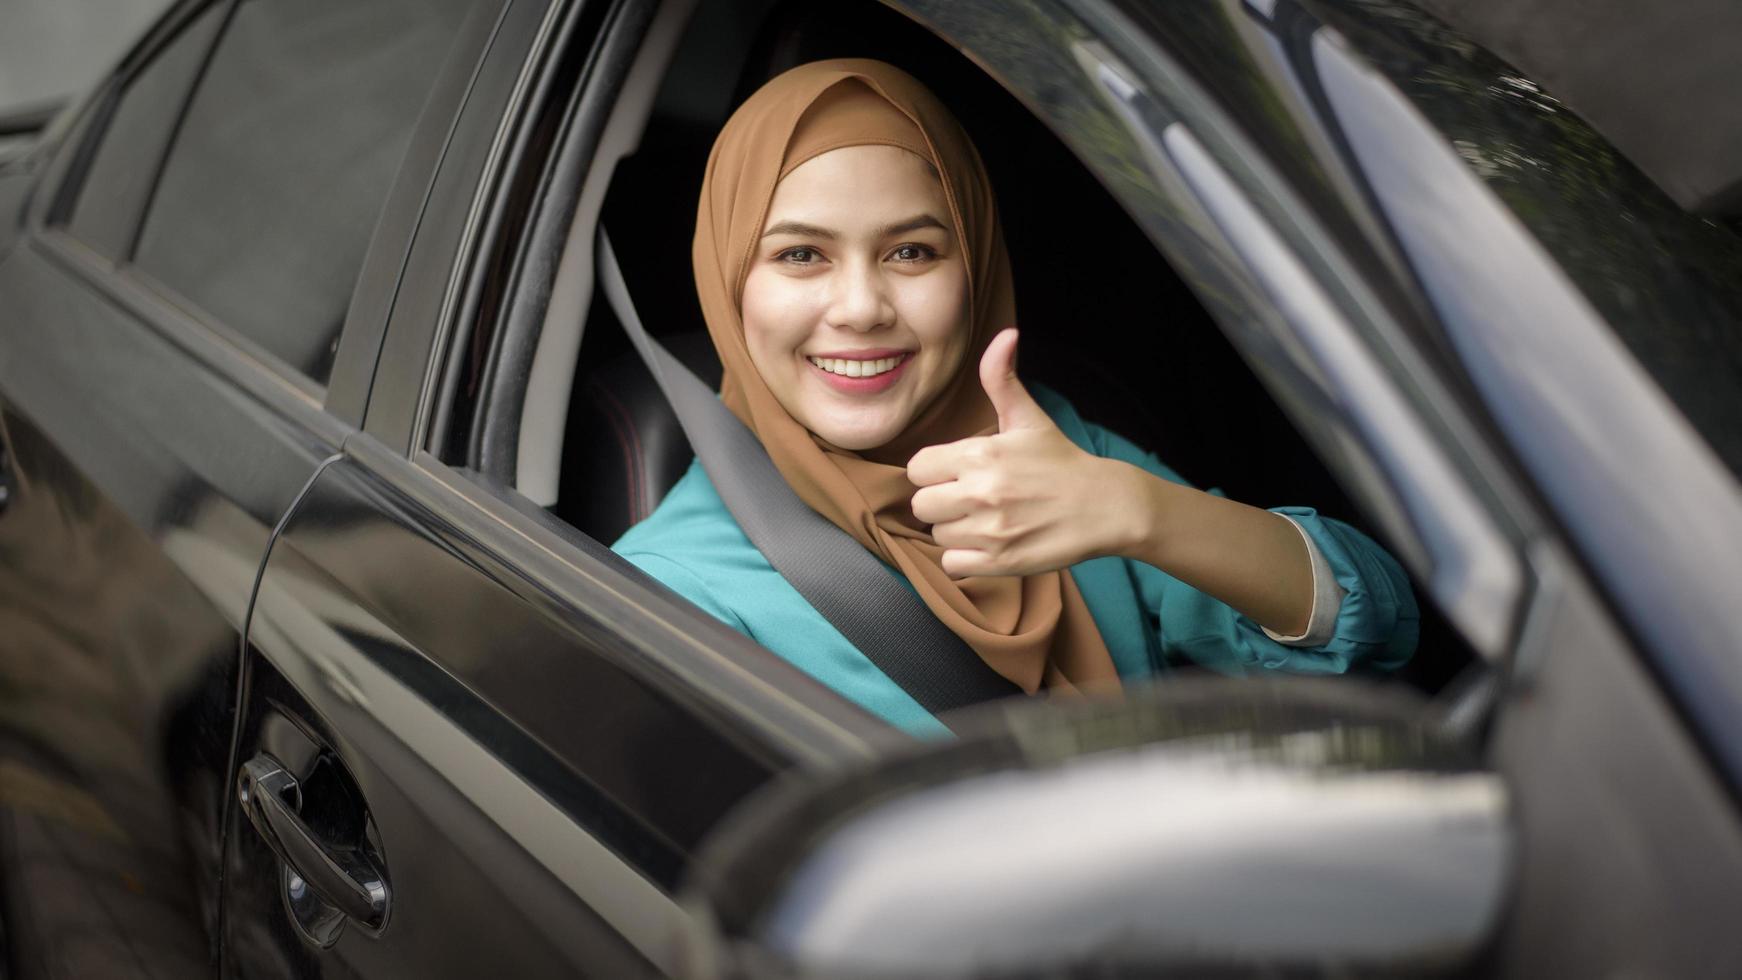 bela empresária com hijab está sorrindo em seu carro foto